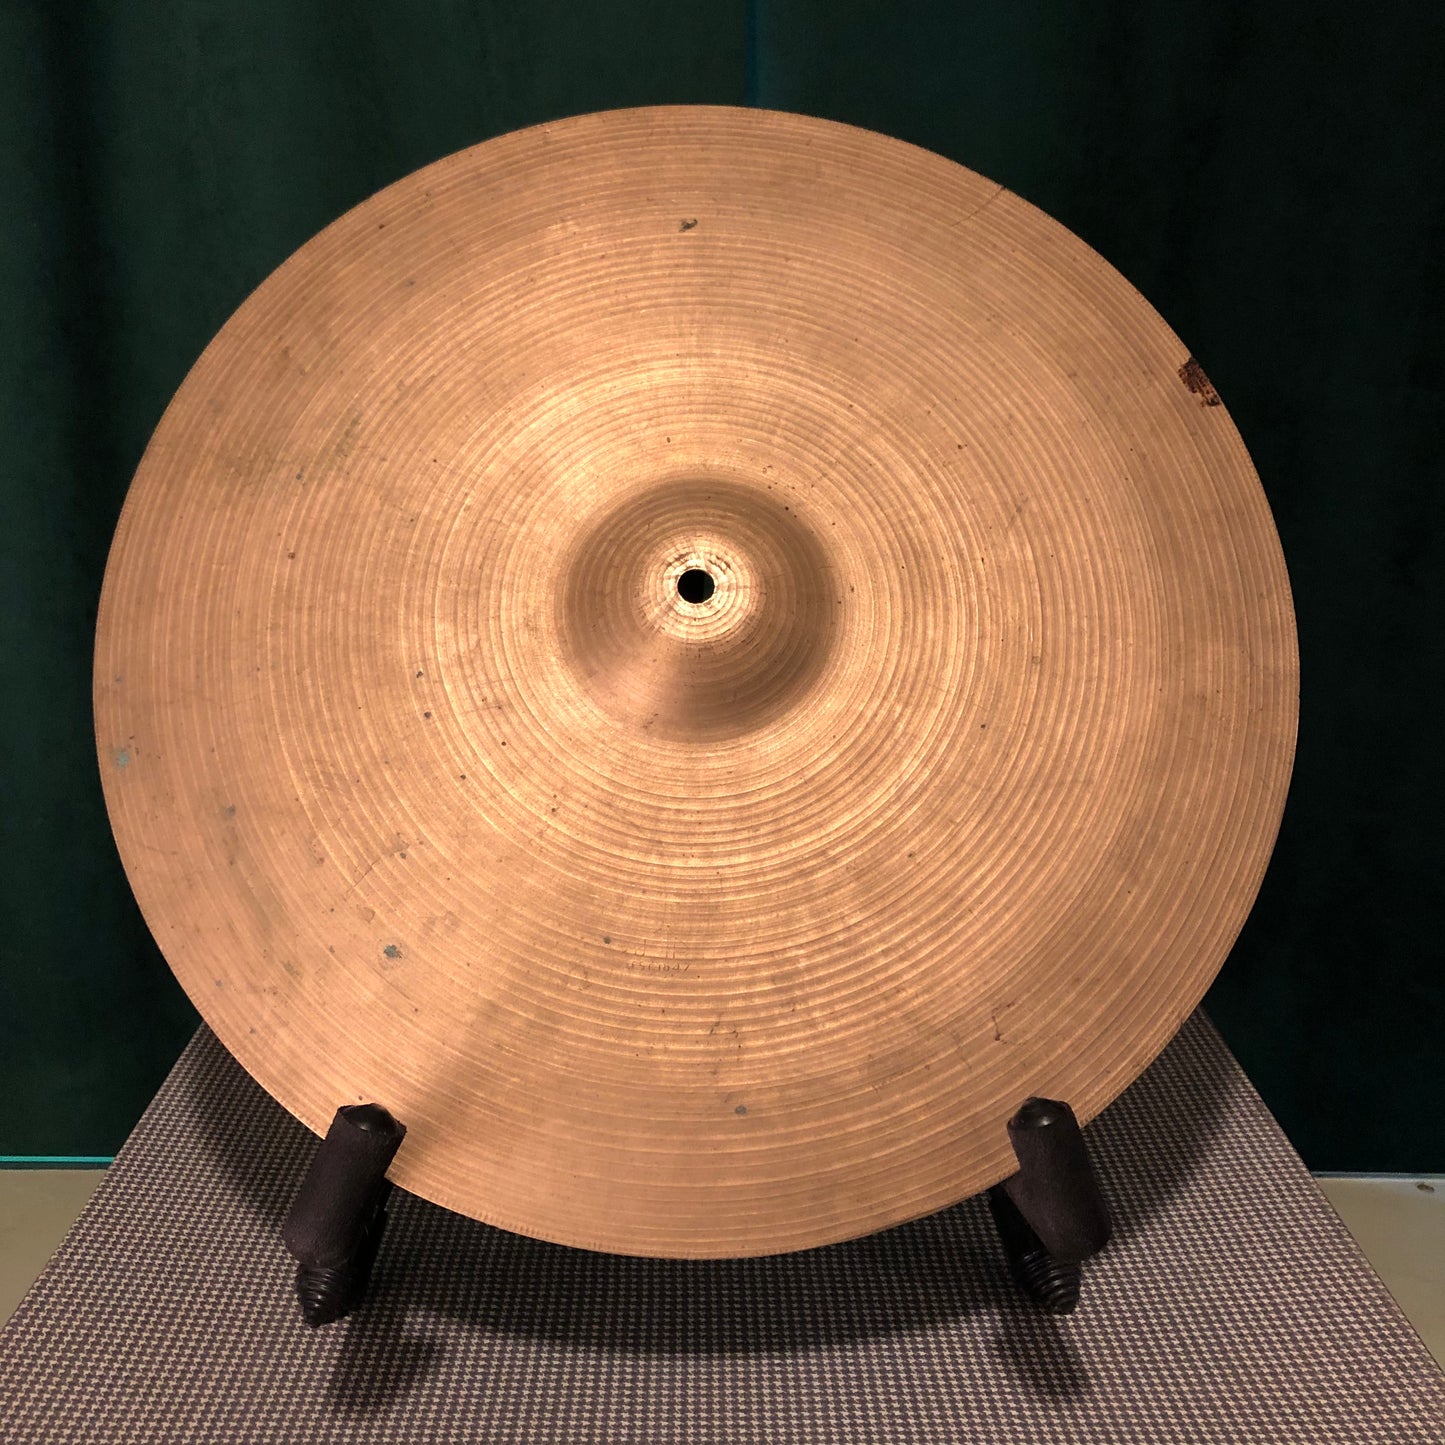 16" Vintage UFIP Crash Cymbal 1060g #598 *Sound File*